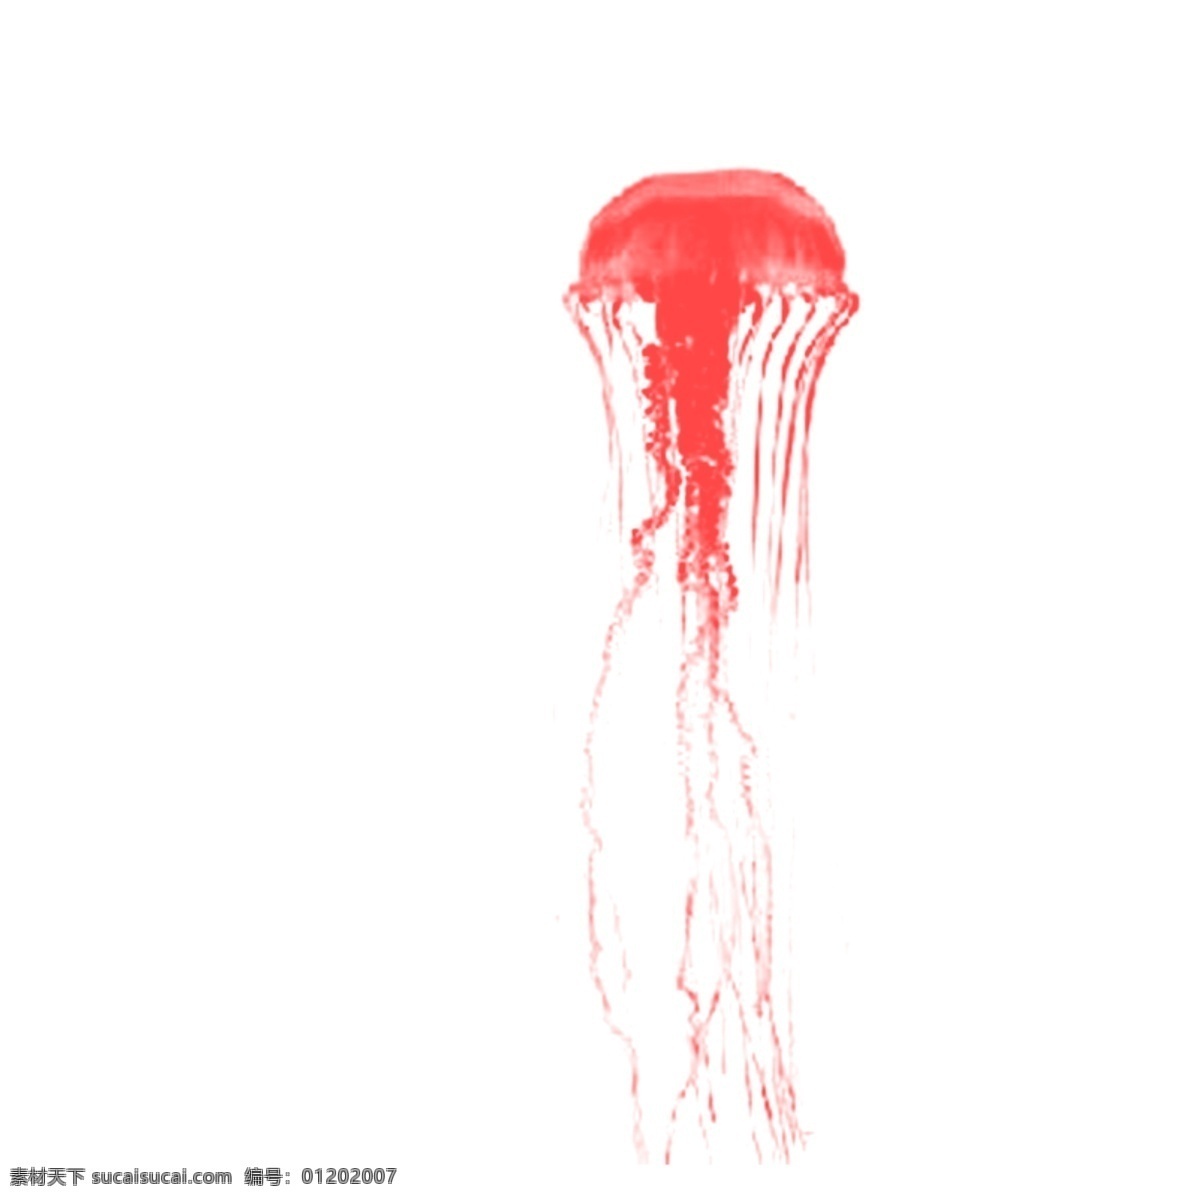 红色 可爱 水母 绘画 卡通 动感 线条 创意 透明 共色 美丽 真实 好看 个性 新意 水墨